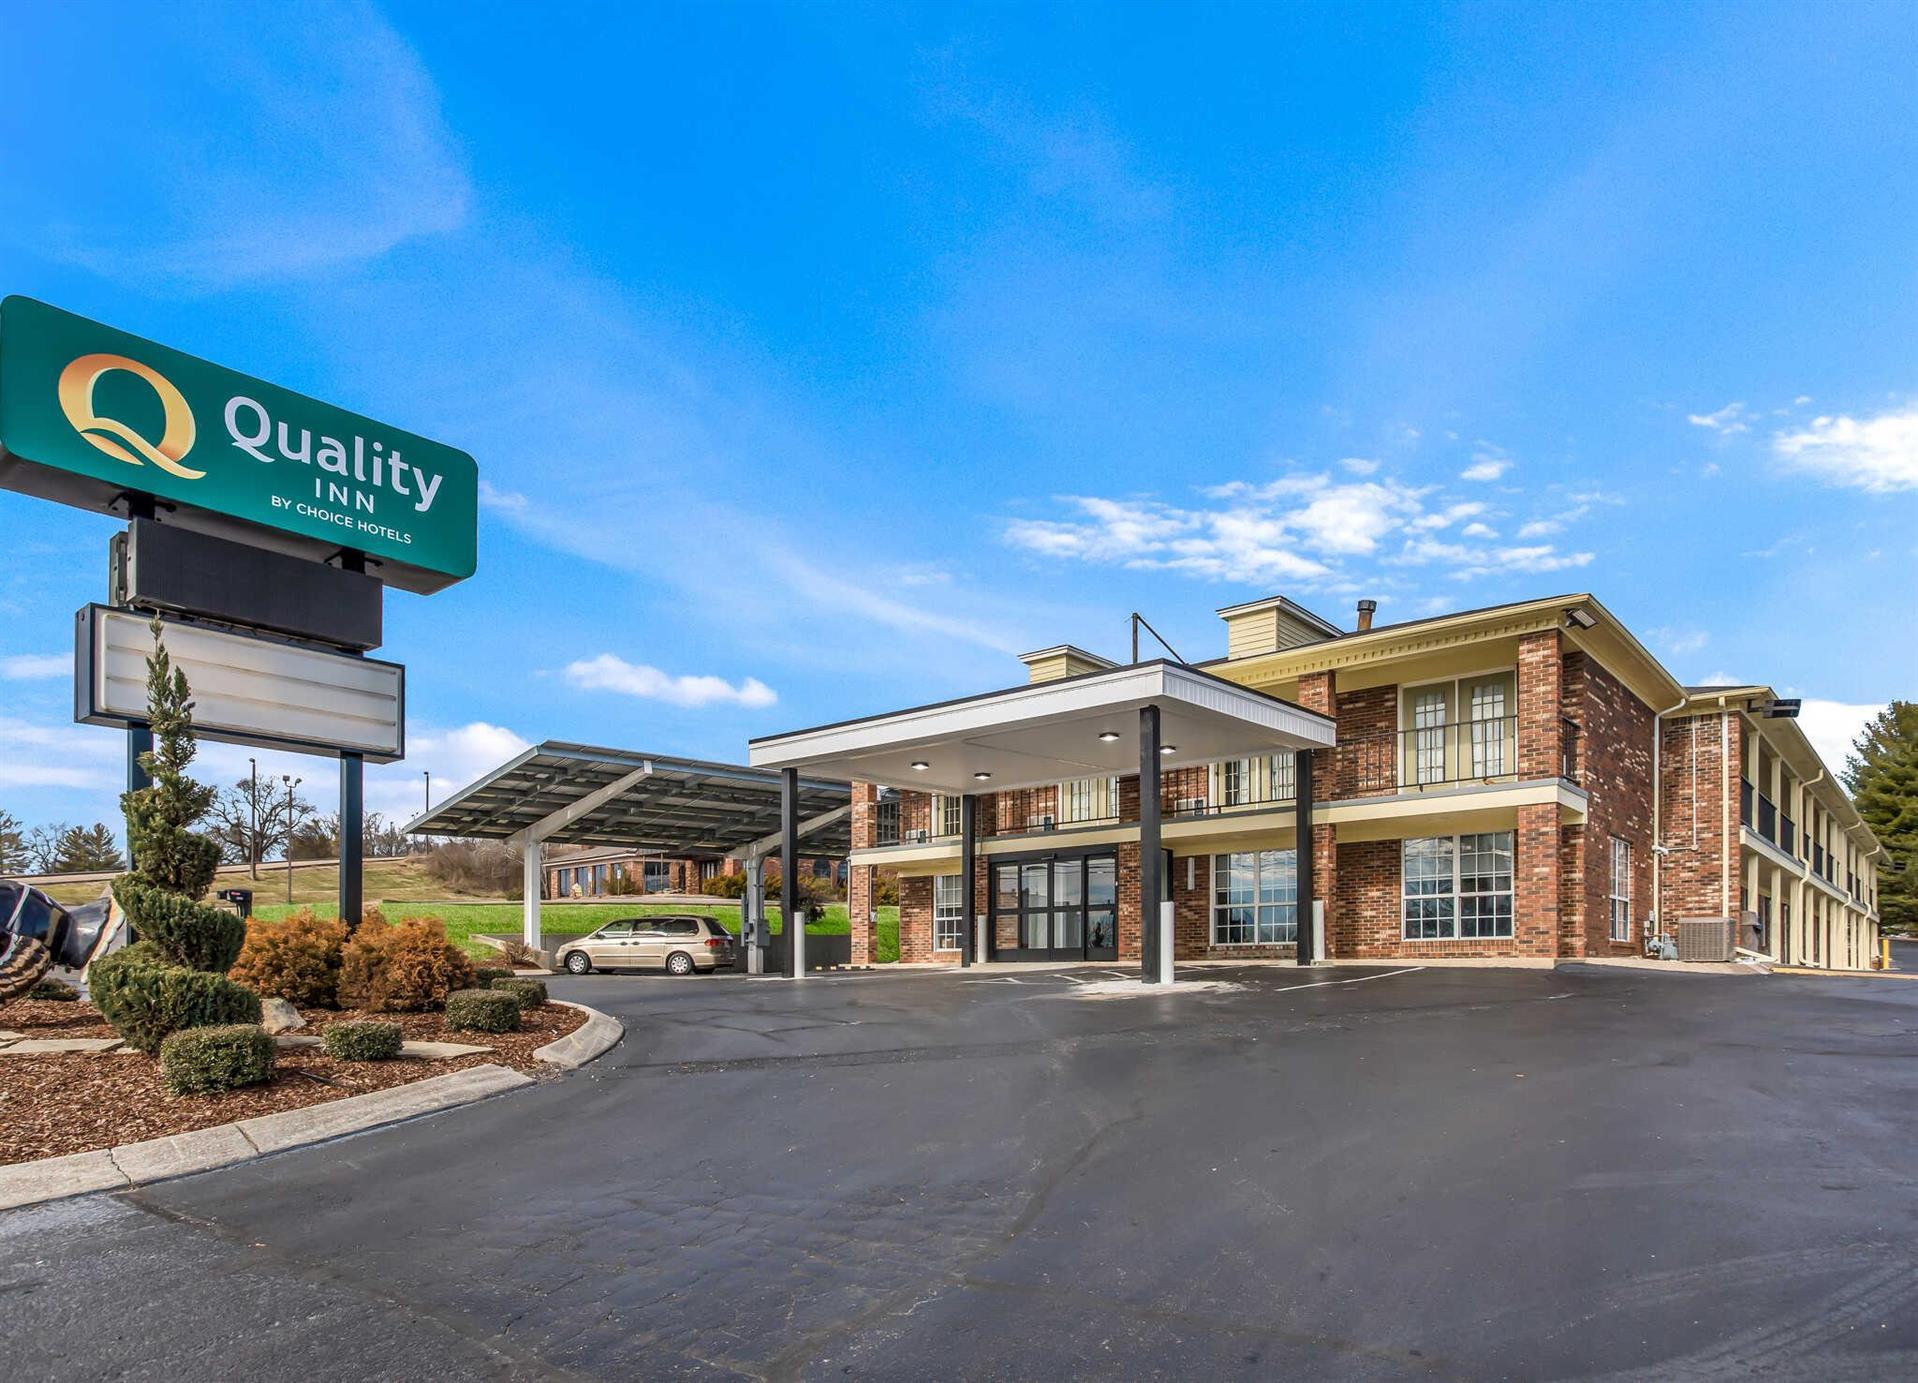 Quality Inn - Pulaski in Pulaski, TN